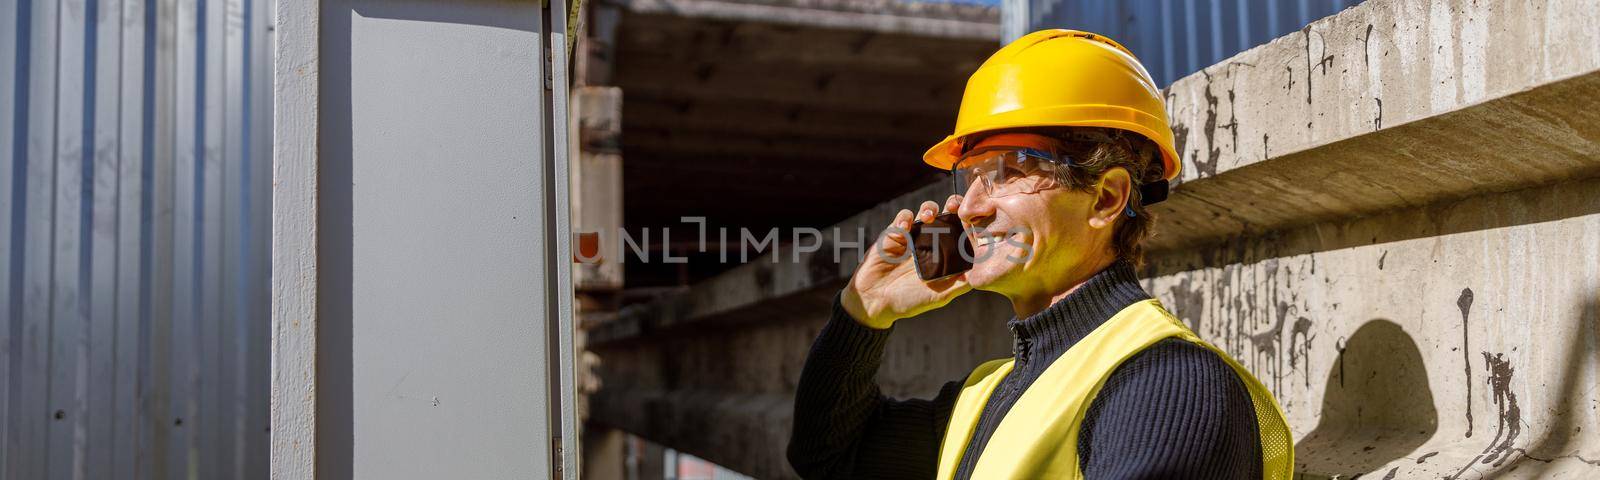 Joyful male engineer talking on mobile phone at factory by Yaroslav_astakhov